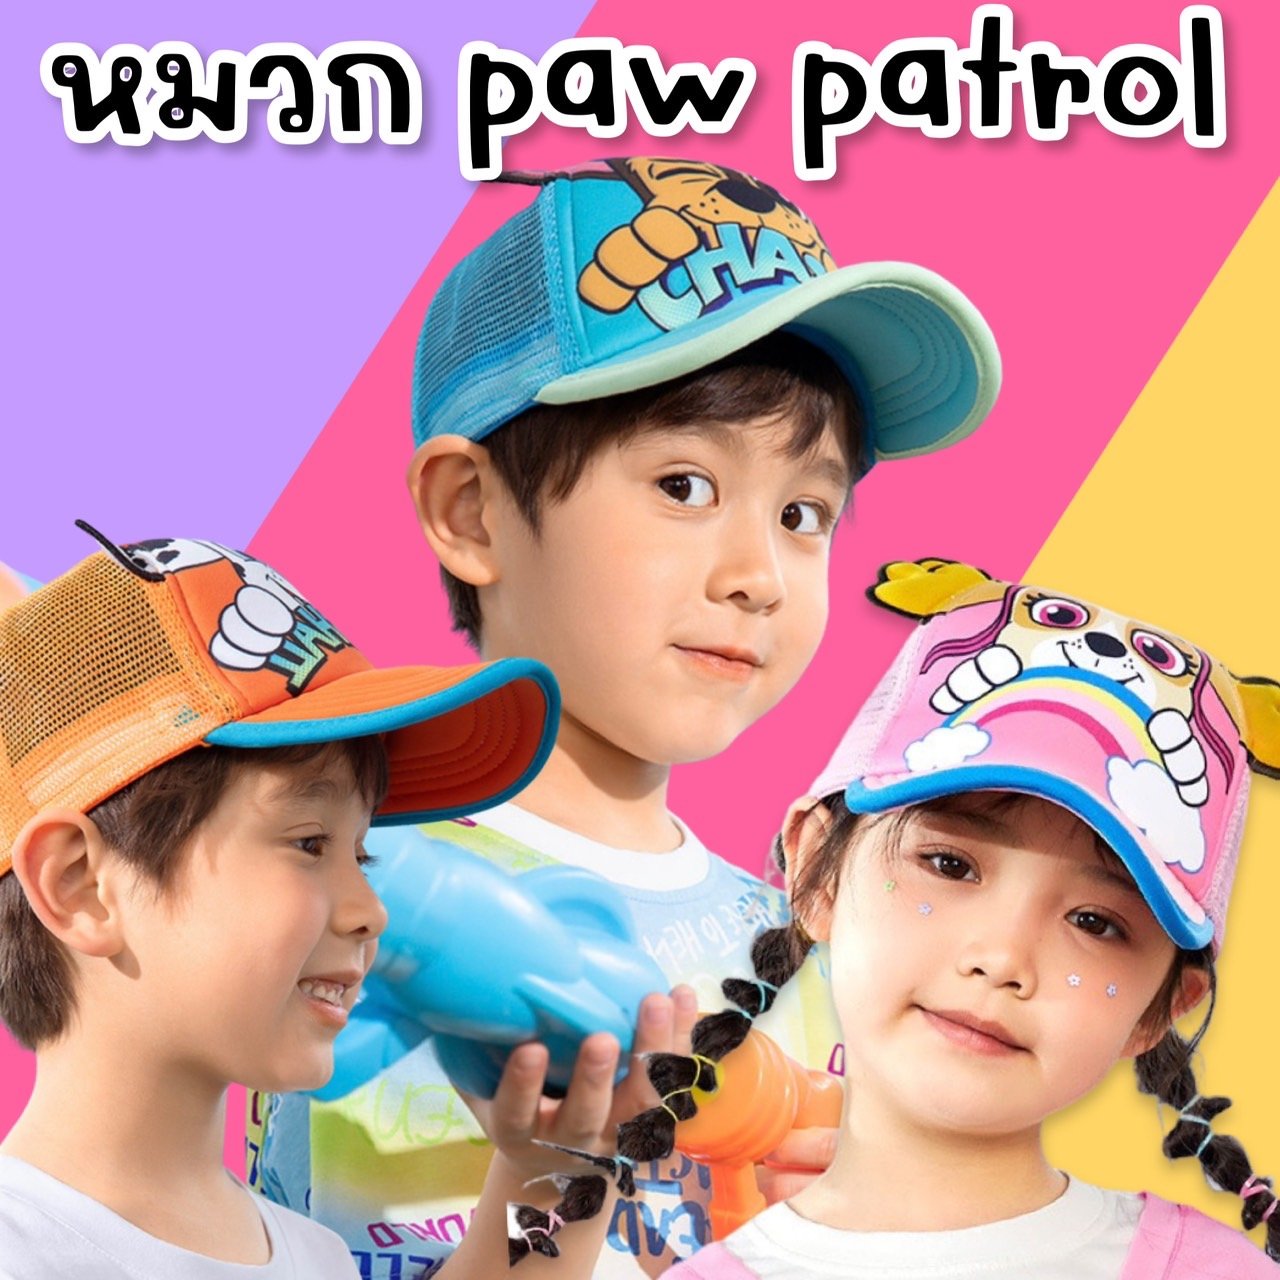 หมวก paw patrol รุ่นใหม่!!